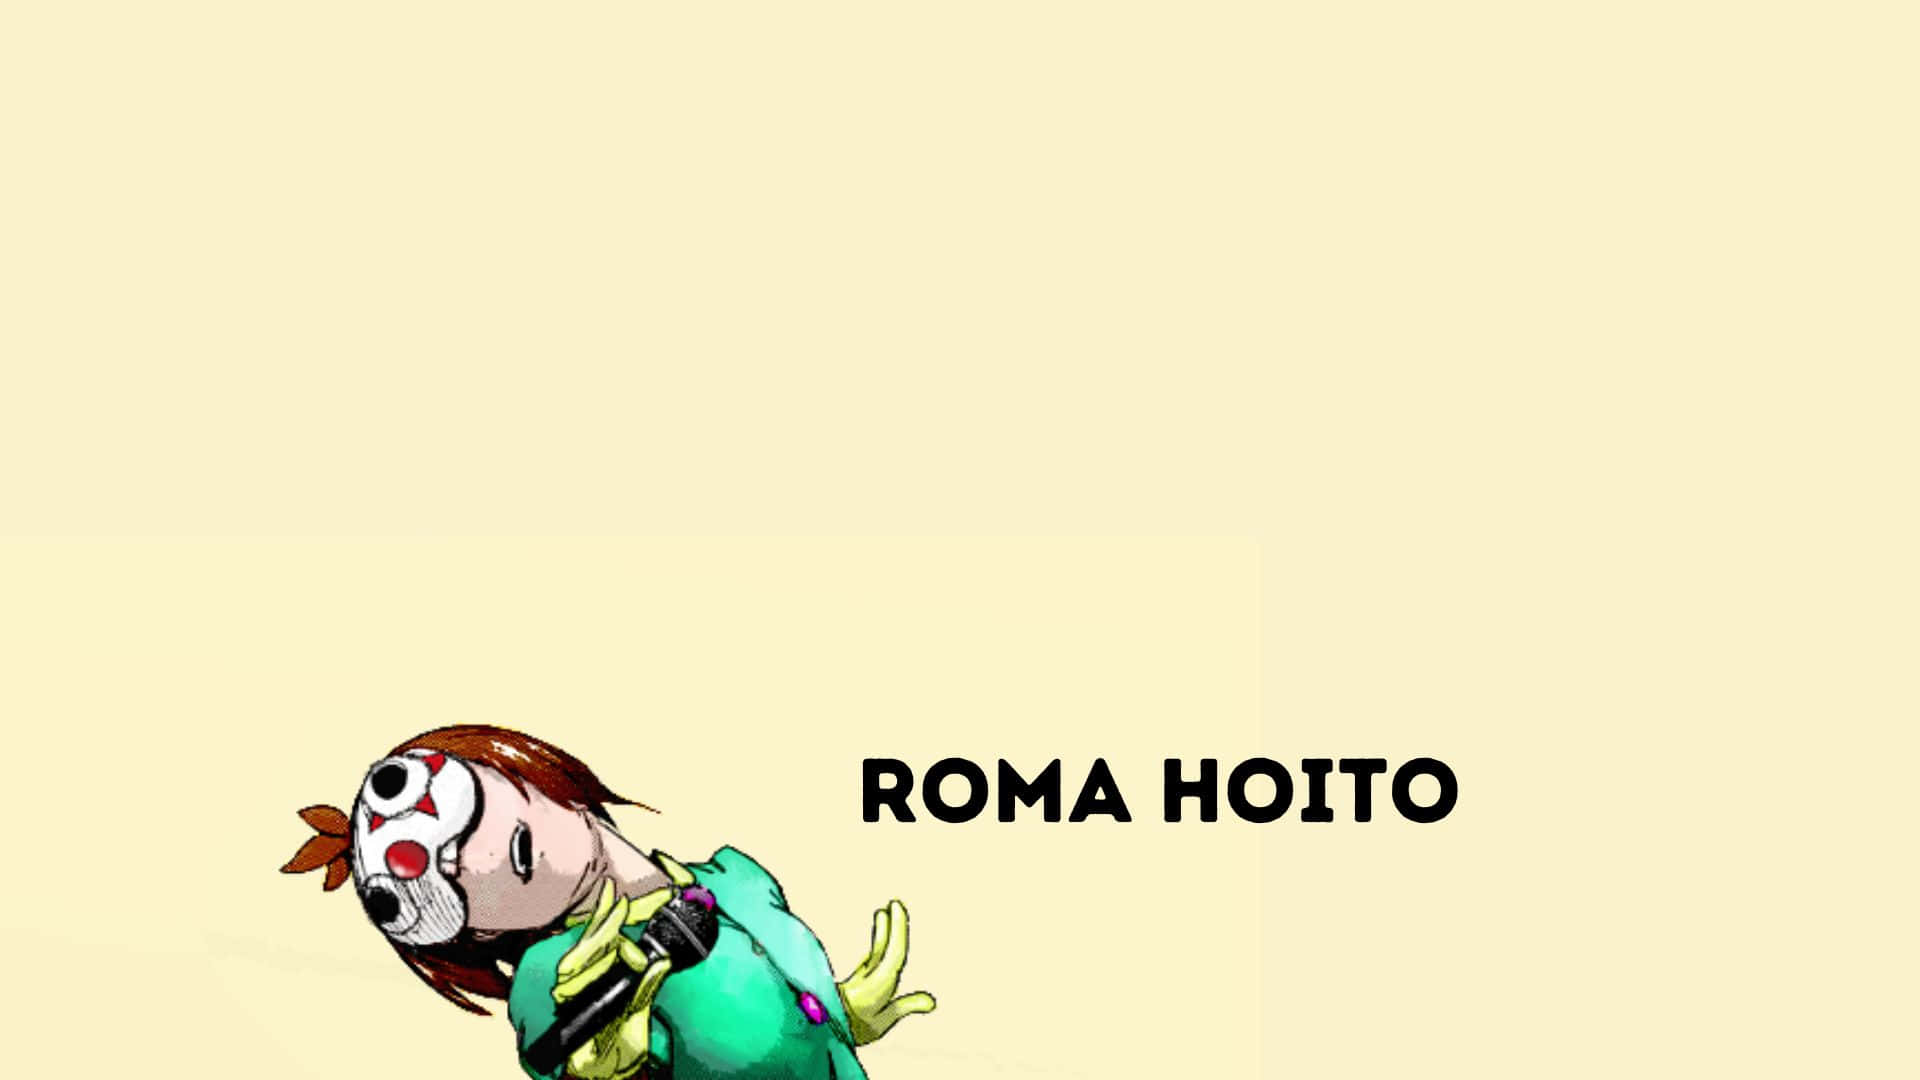 Roma Hoito Wallpaper